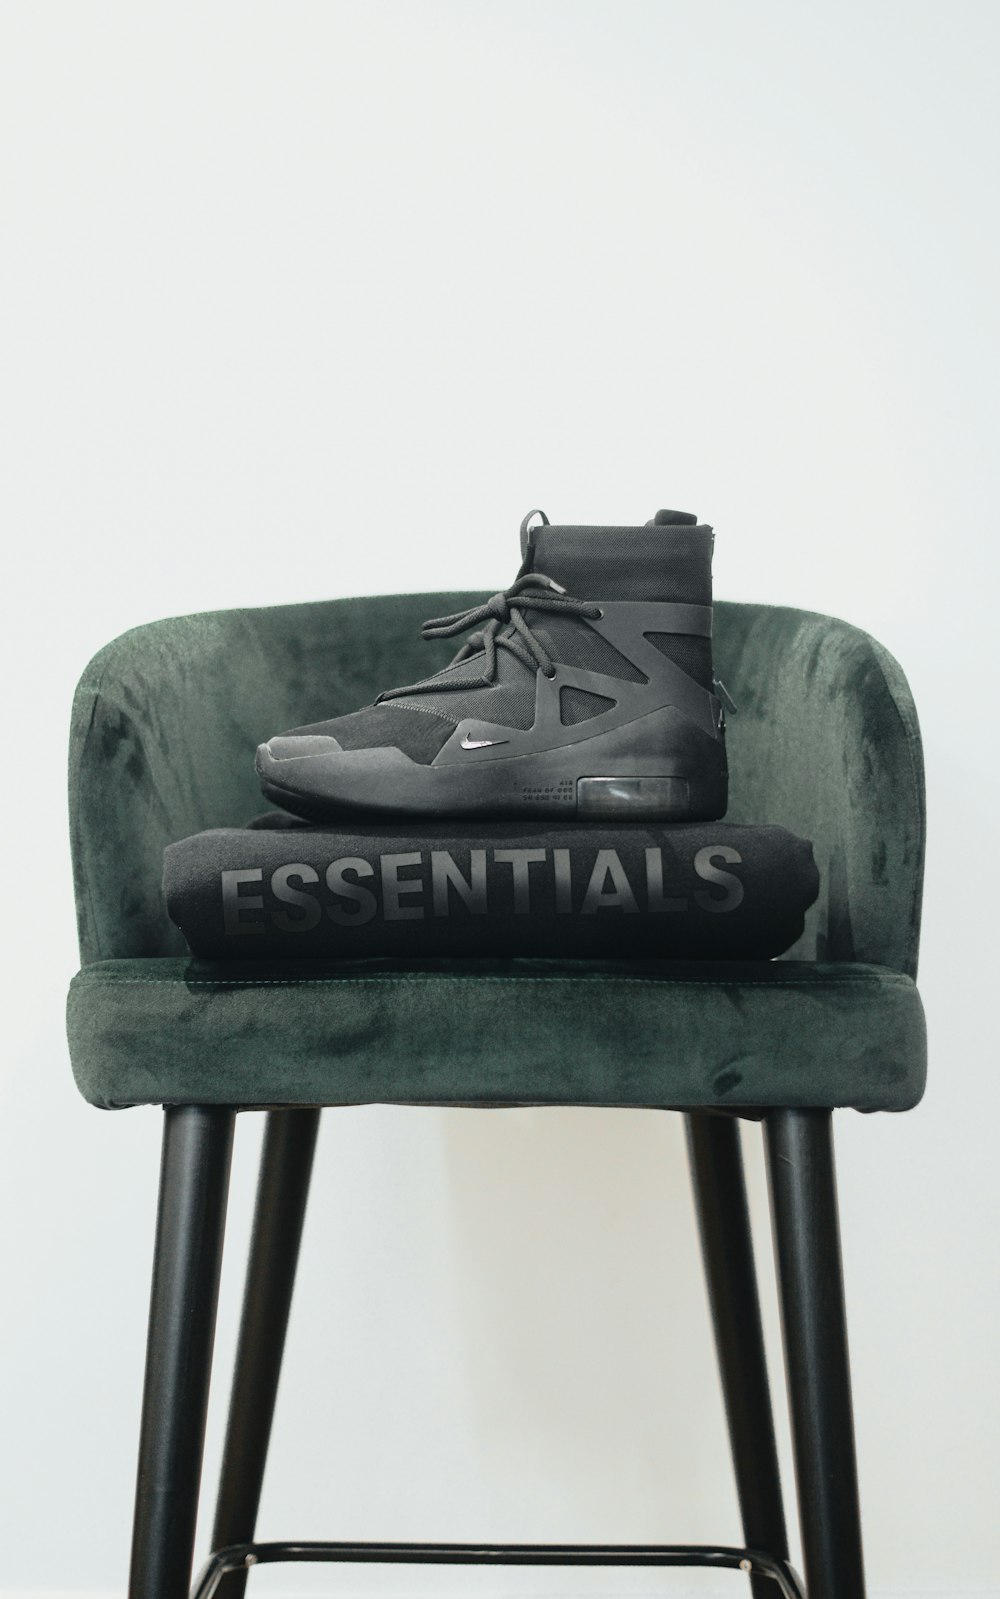 une paire de chaussures posée sur une chaise verte